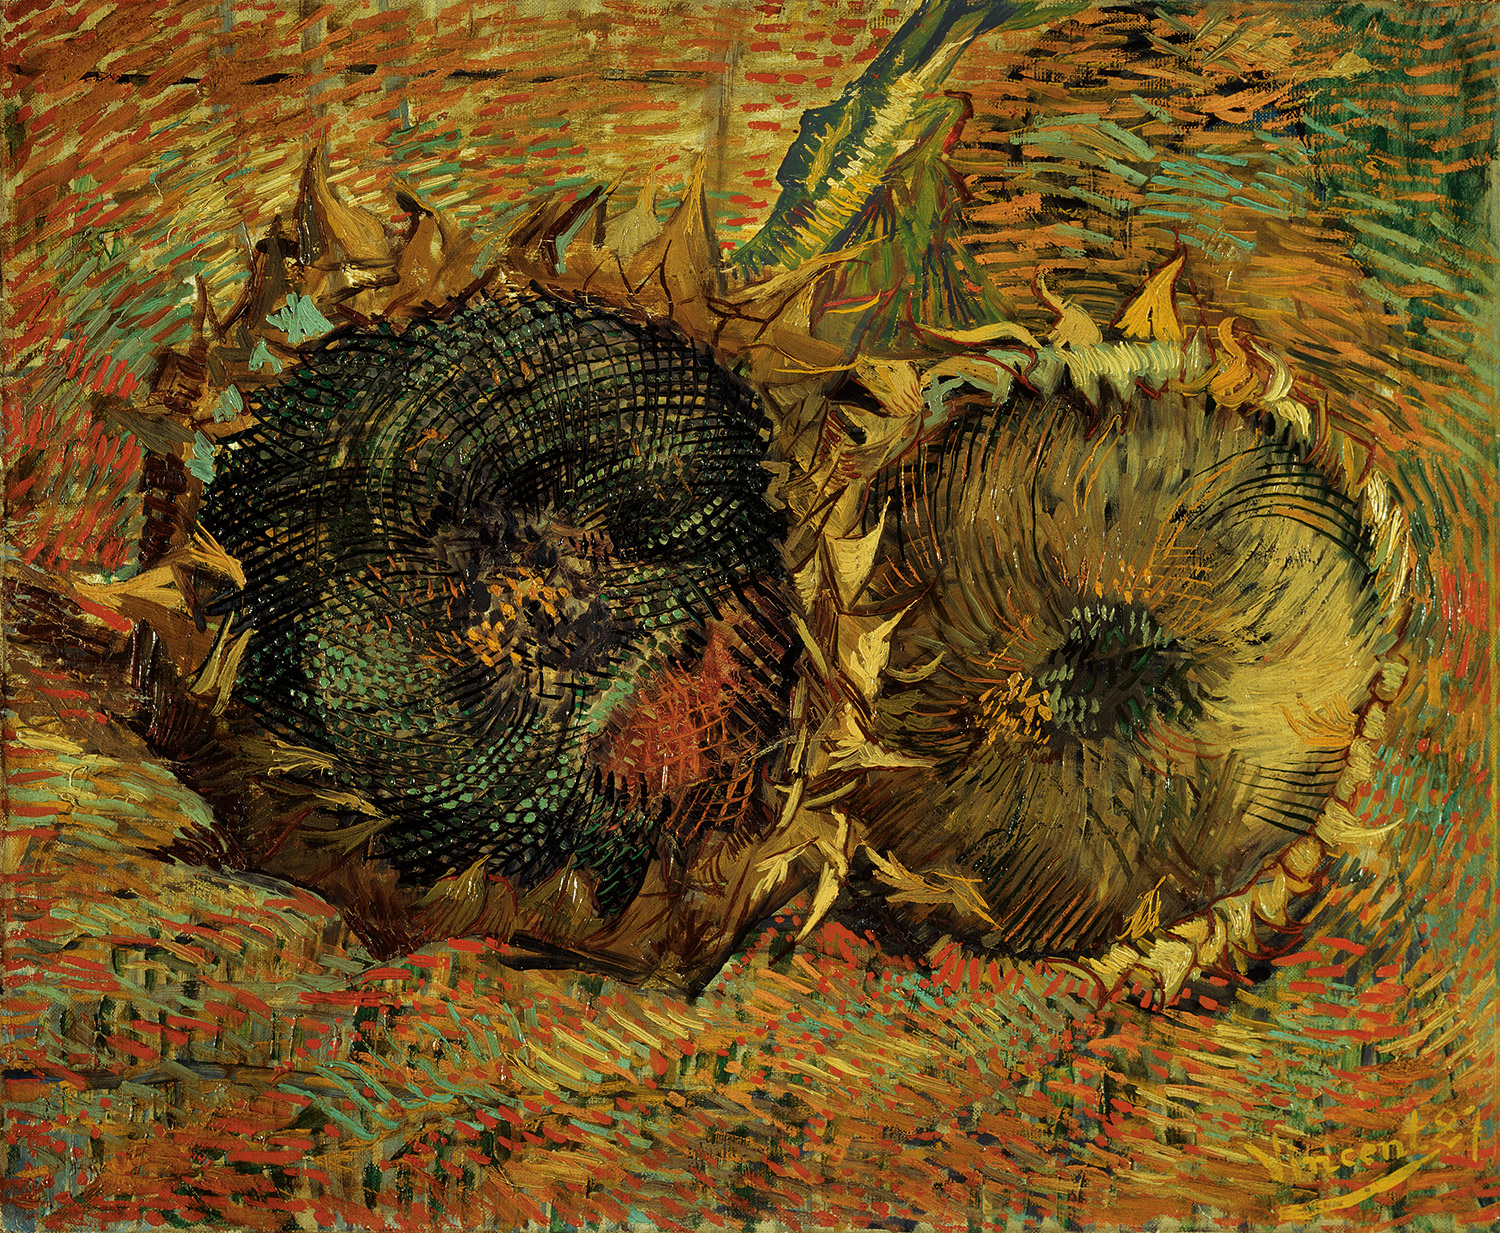 Sonnenblume by Vincent van Gogh - 1887 - 50 x 60,7 cm Kunstmuseum Bern